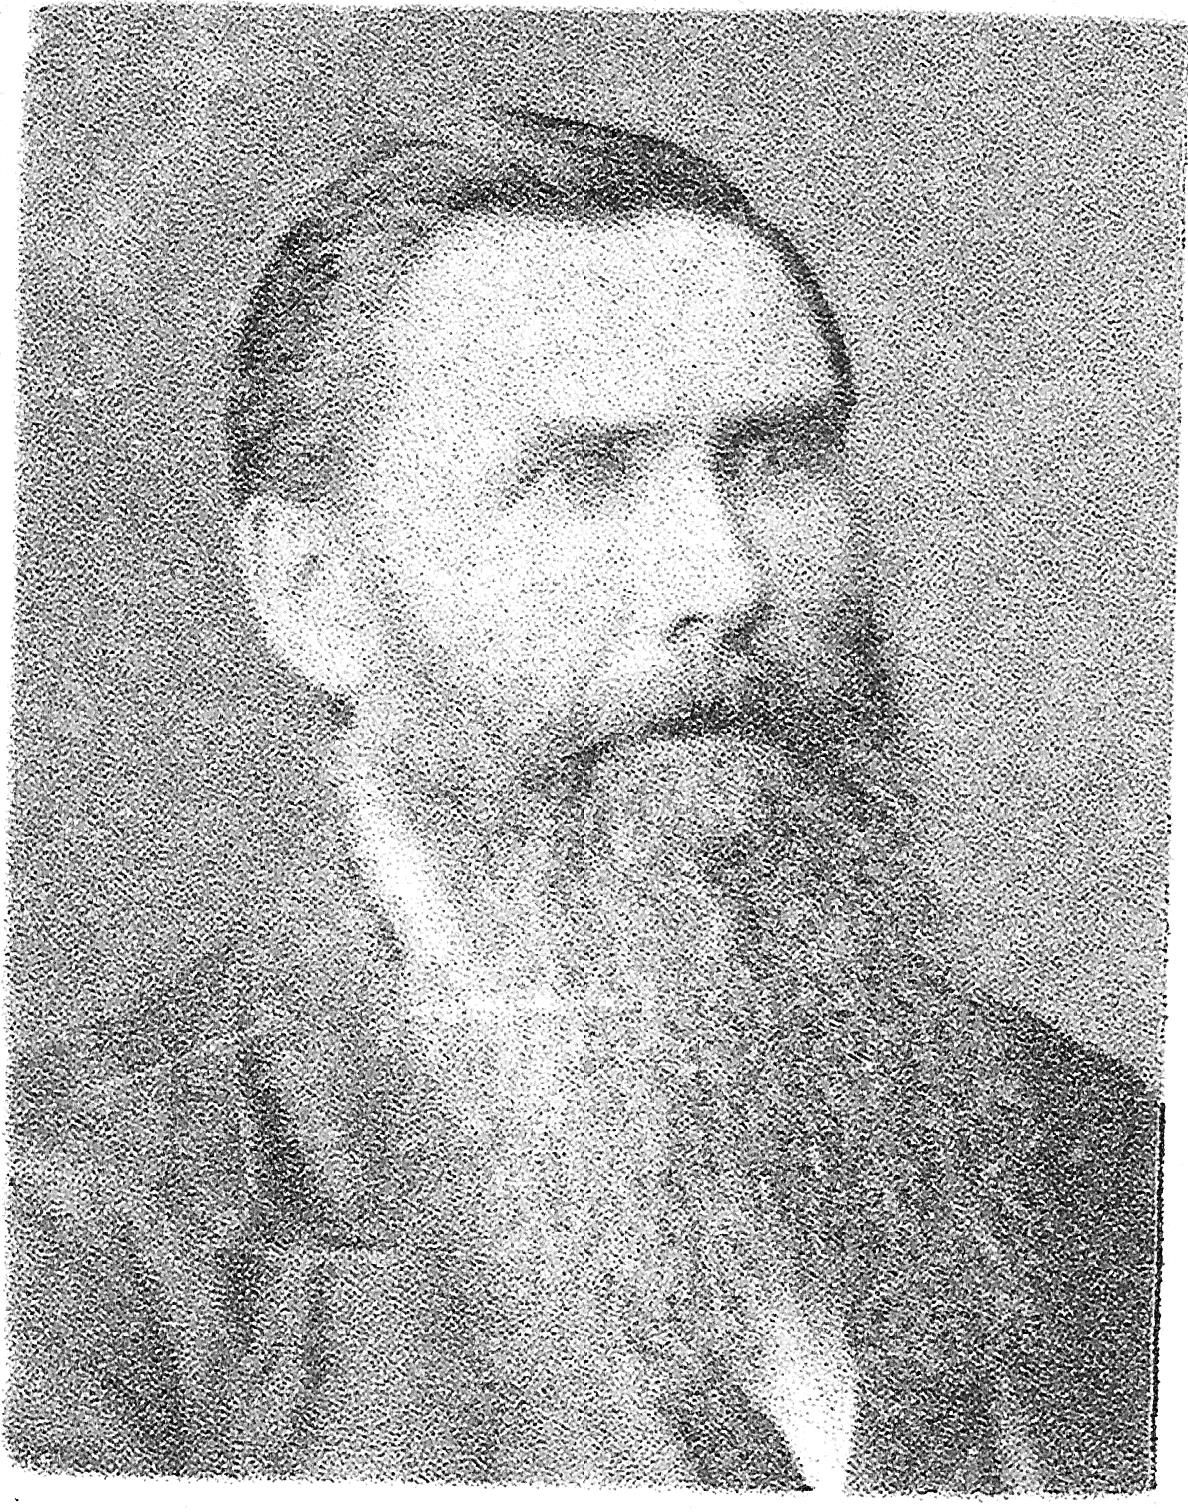 Jonas Halverson (1824 - 1902)